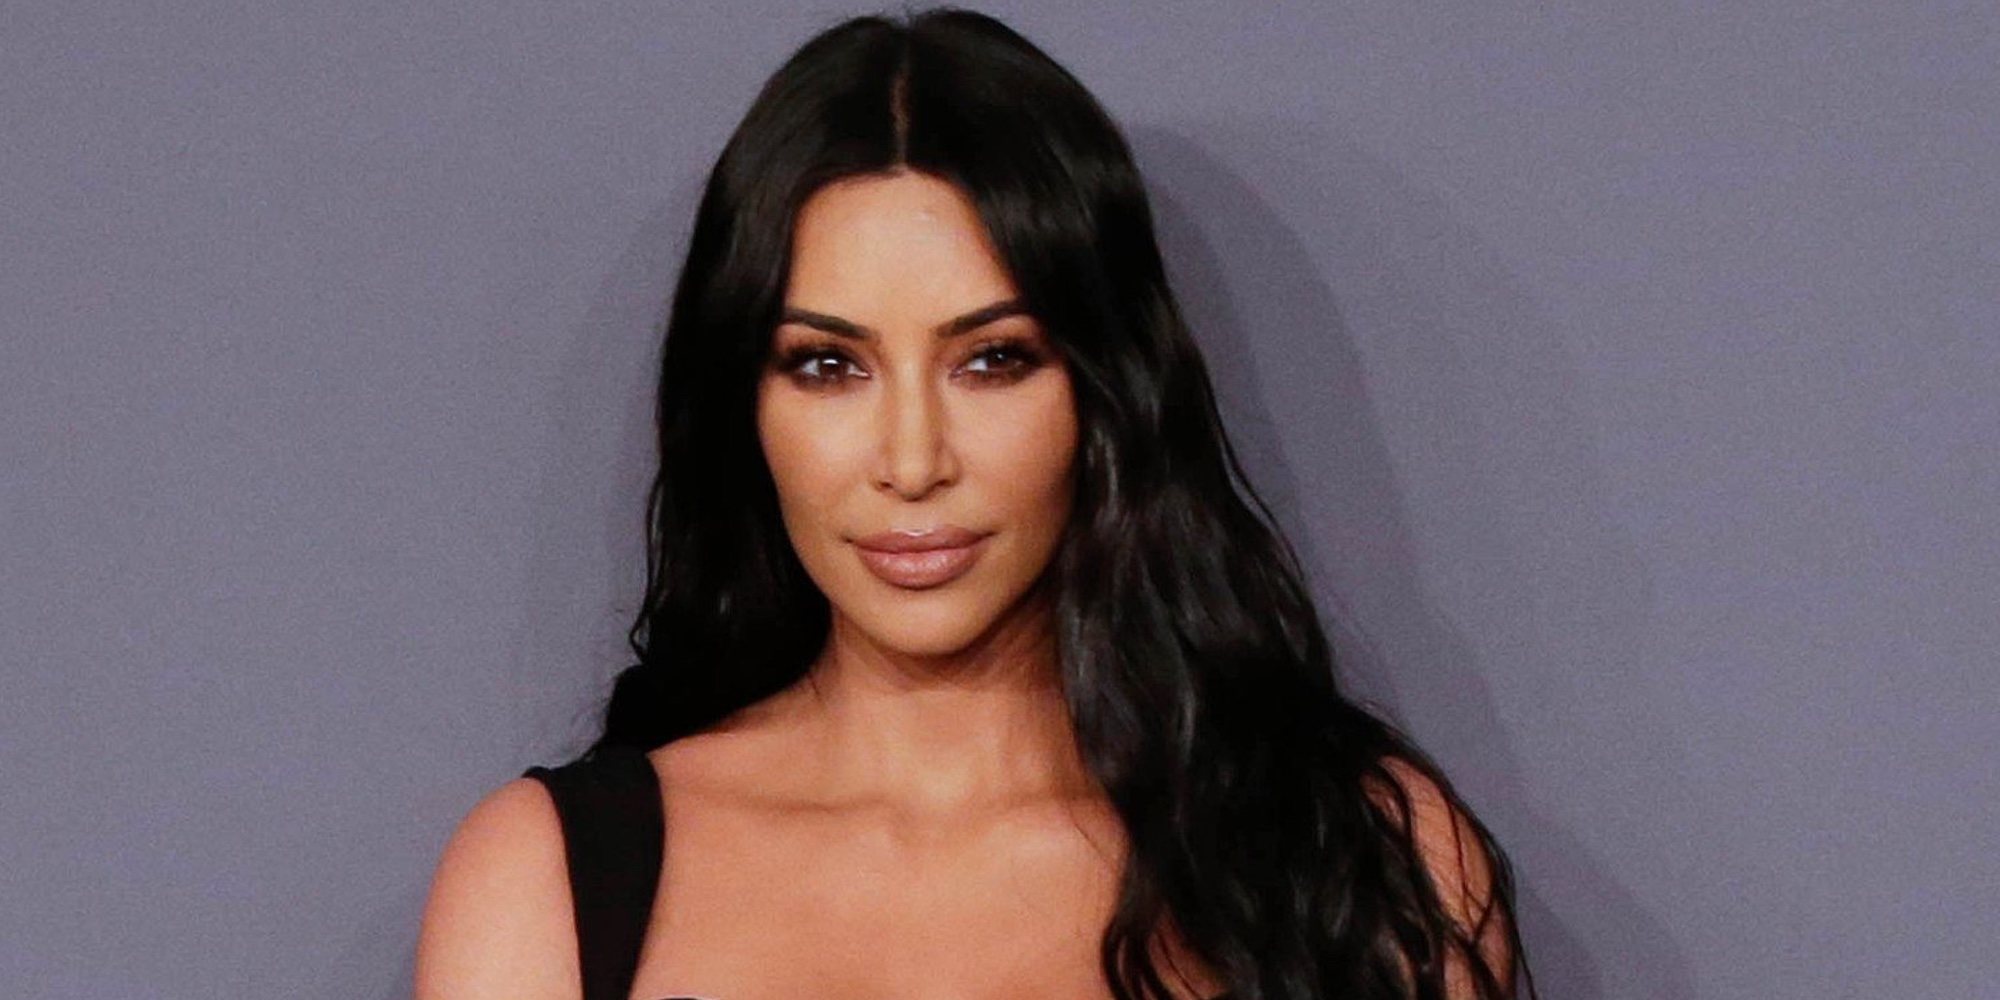 Kim Kardashian revela el tráiler de su documental sobre la reforma de la justicia penal estadounidense